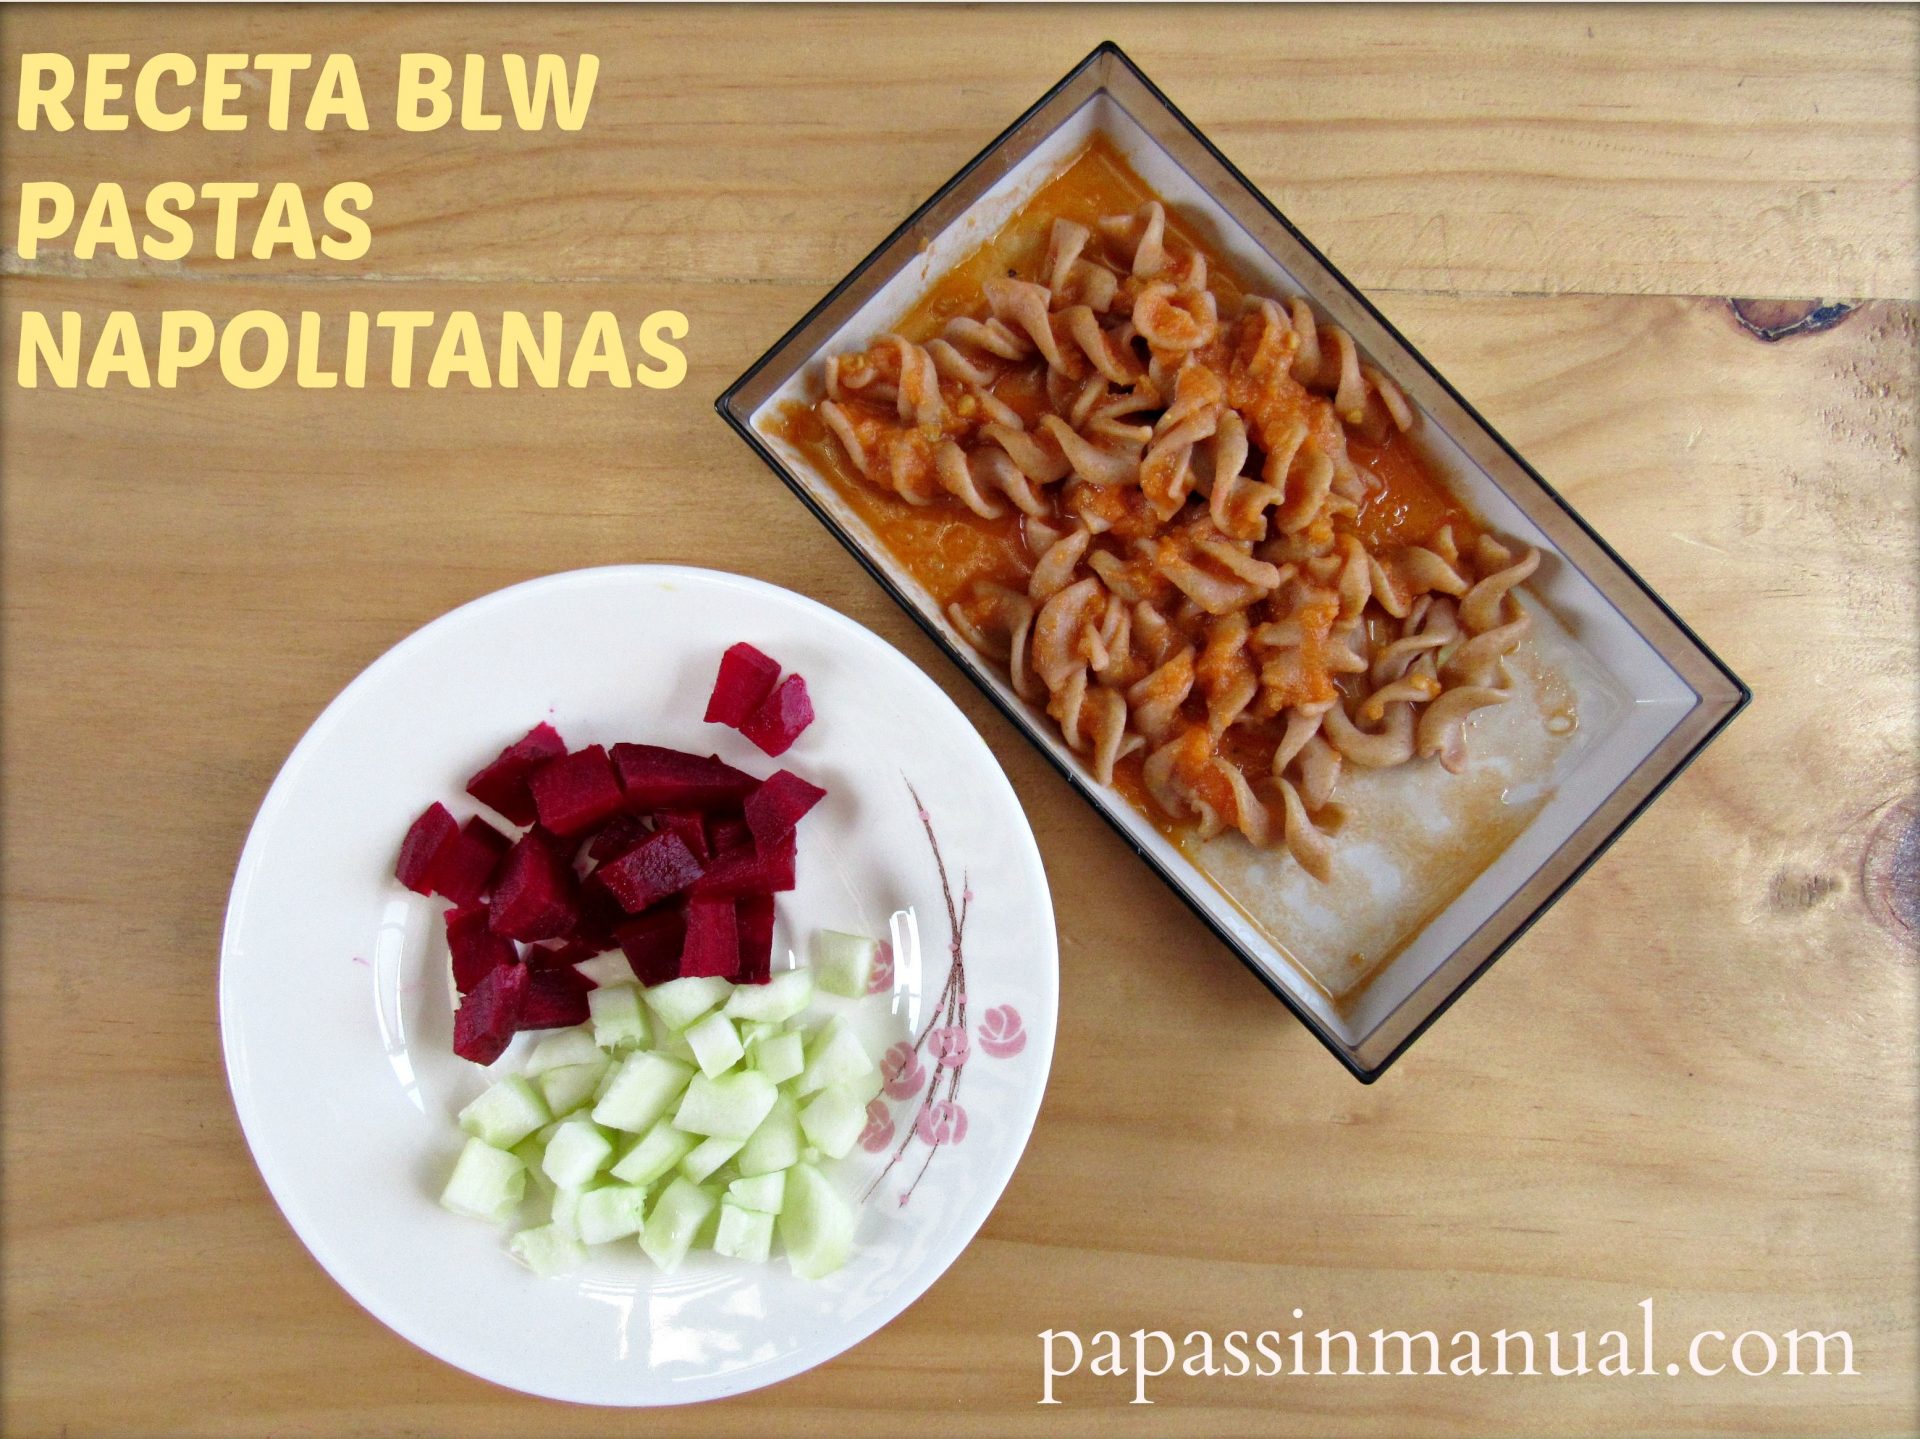 Receta BLW: Pastas napolitanas